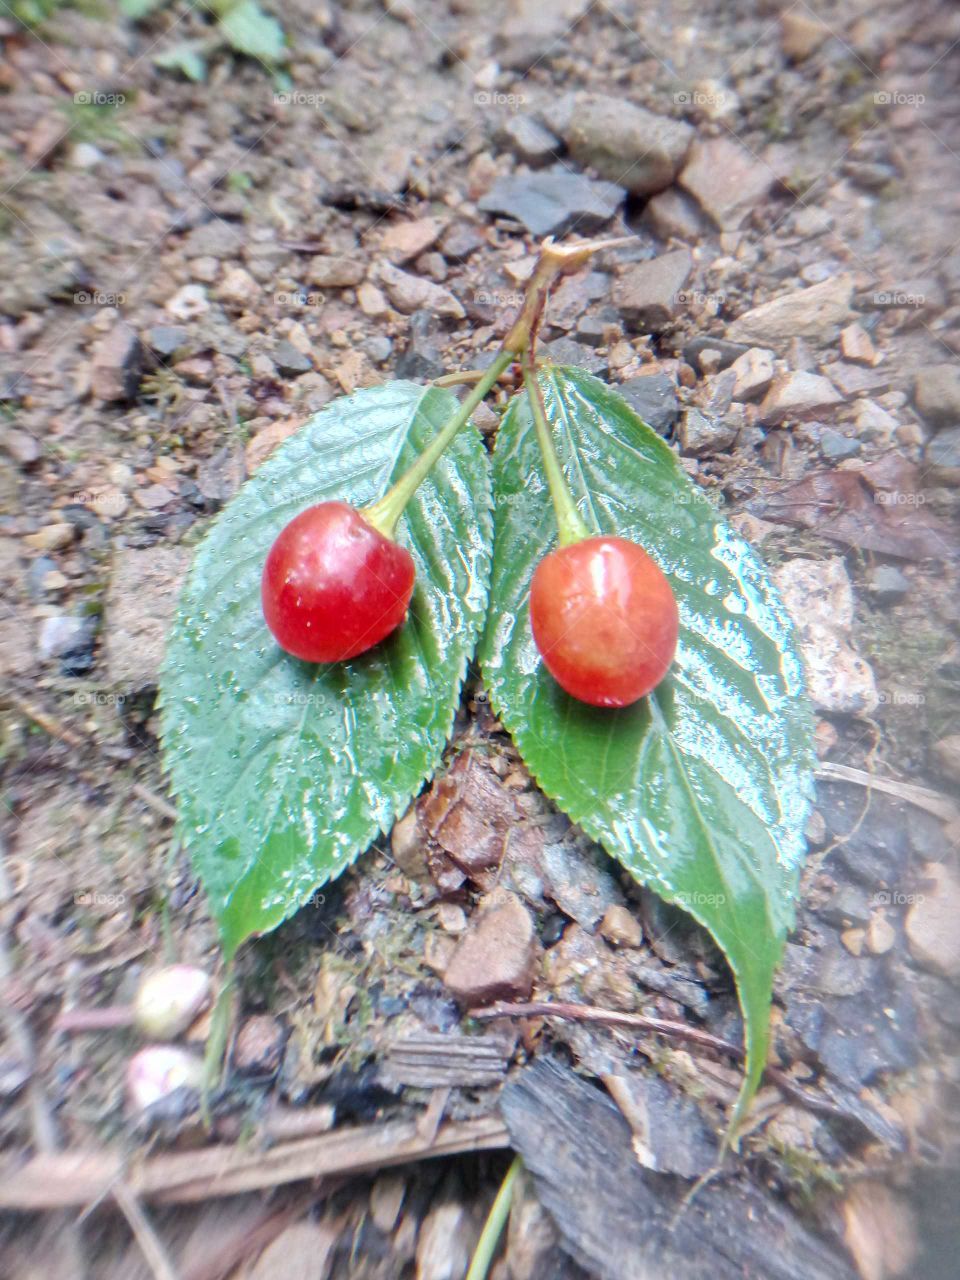 red cherry